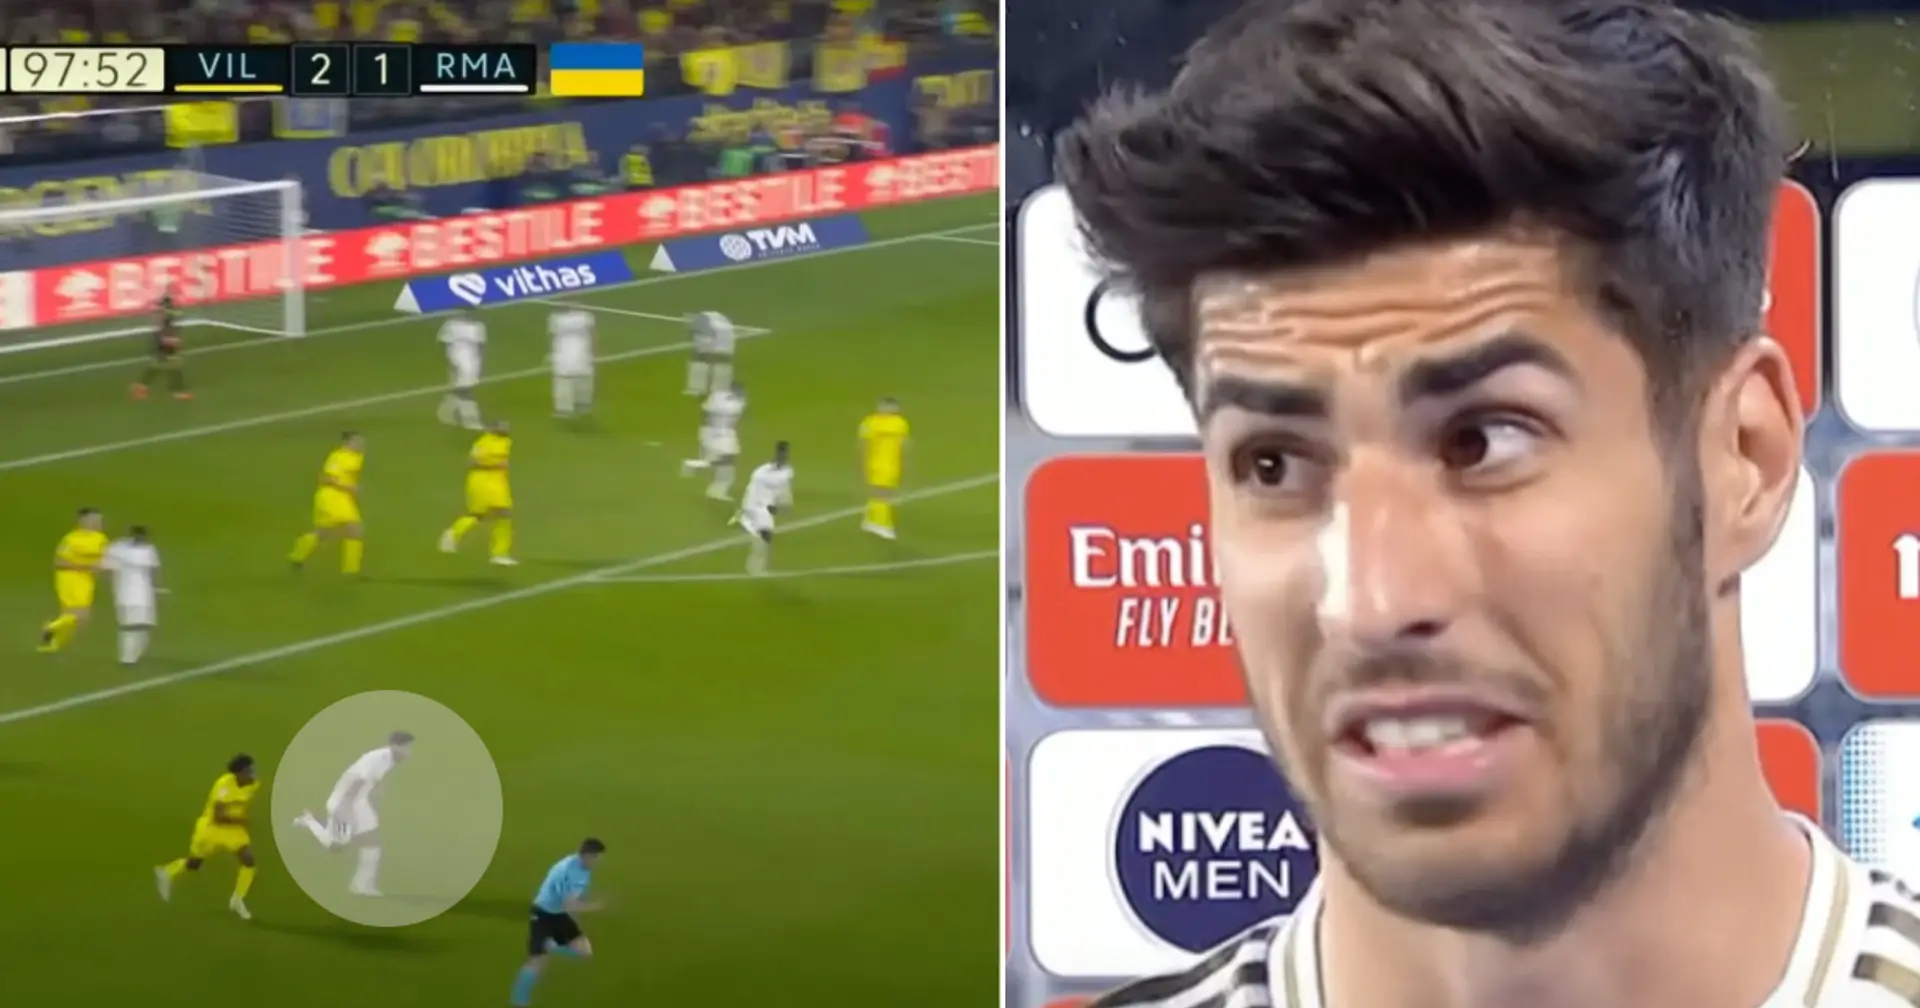 "Wir müssen diesen Trottel loswerden": Eine Episode mit Asensio vom Spiel gegen Villarreal geht viral